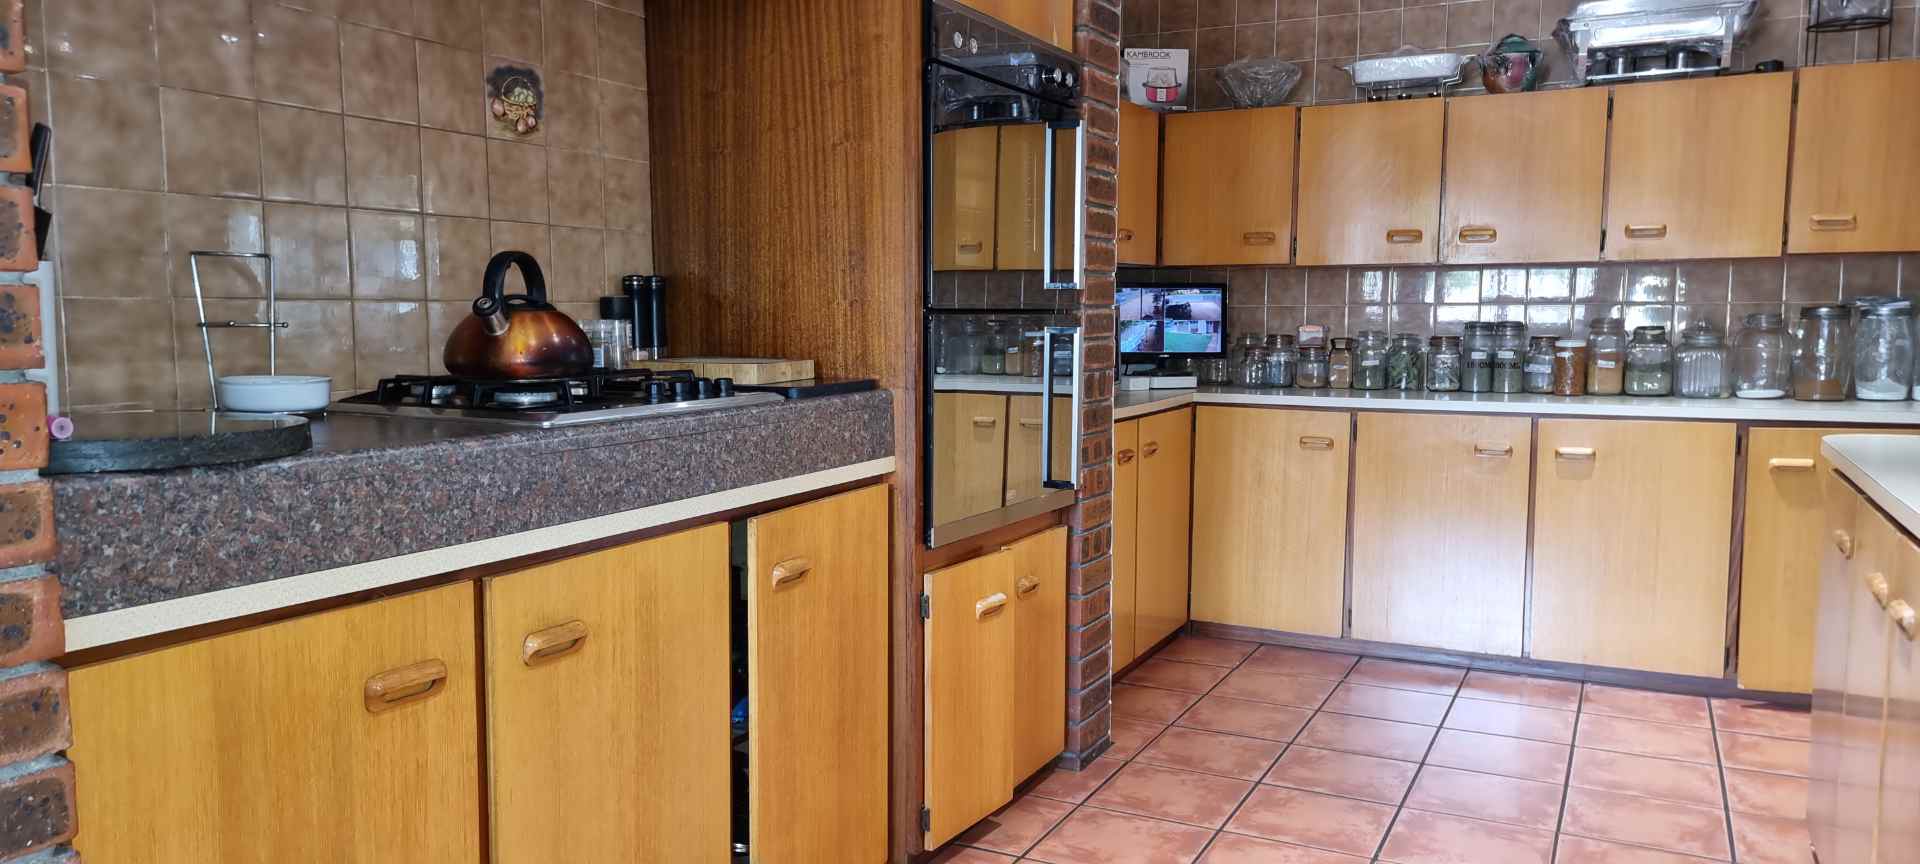 5 Bedroom Property for Sale in Soneike Western Cape